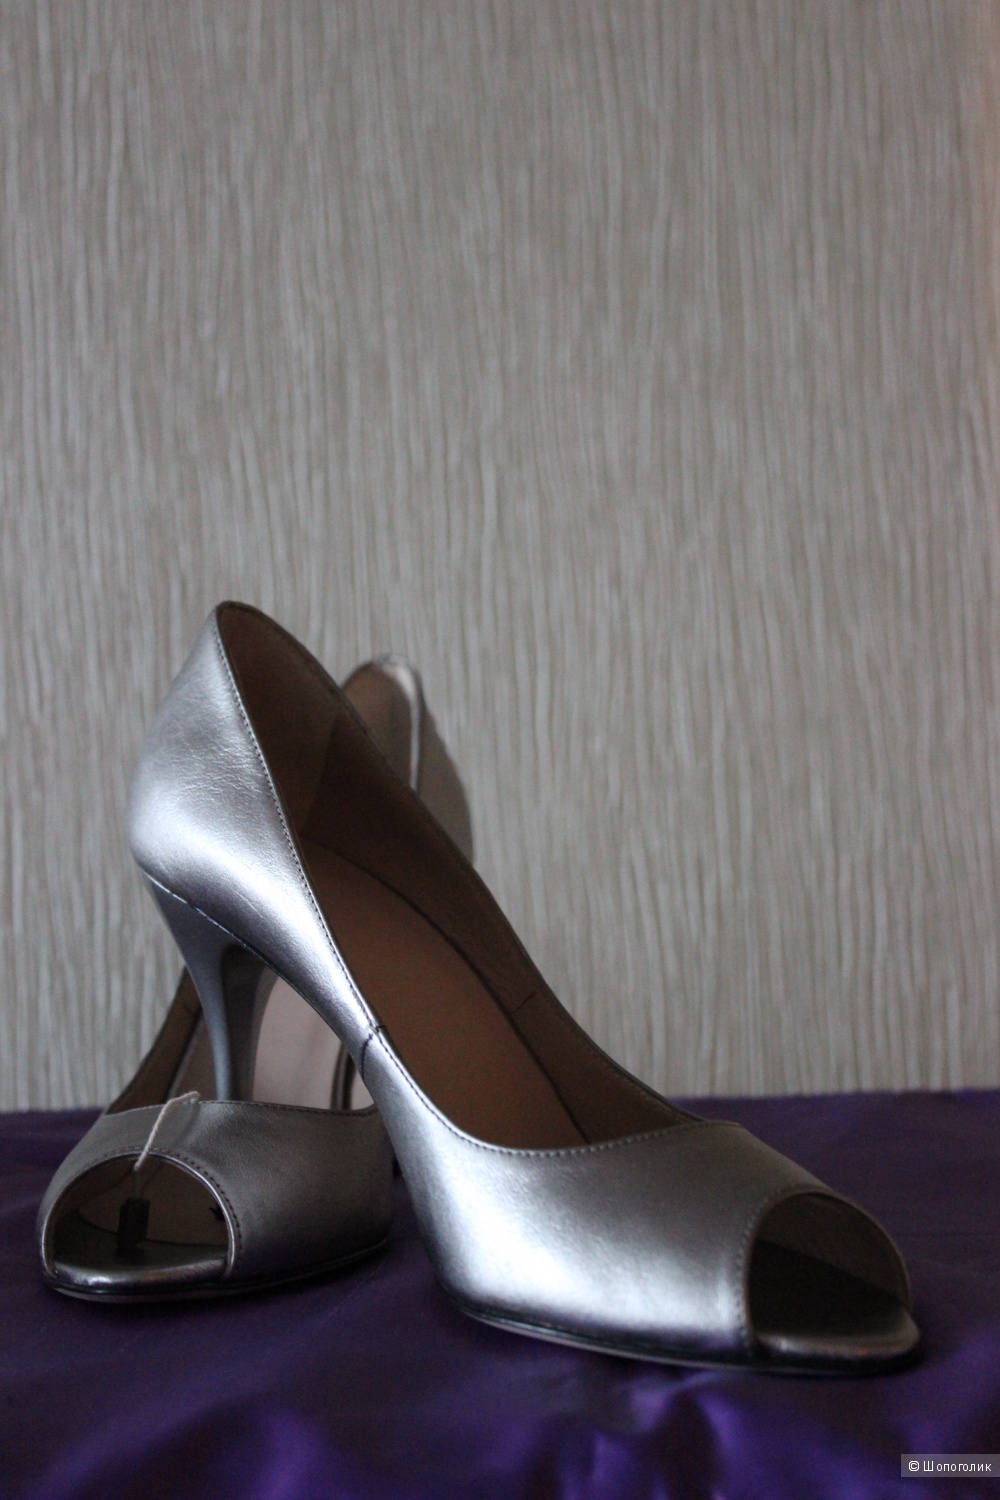 Новые туфли ANCARANI, Италия, натуральная кожа, серебристого цвета на 38 - 39 размер.